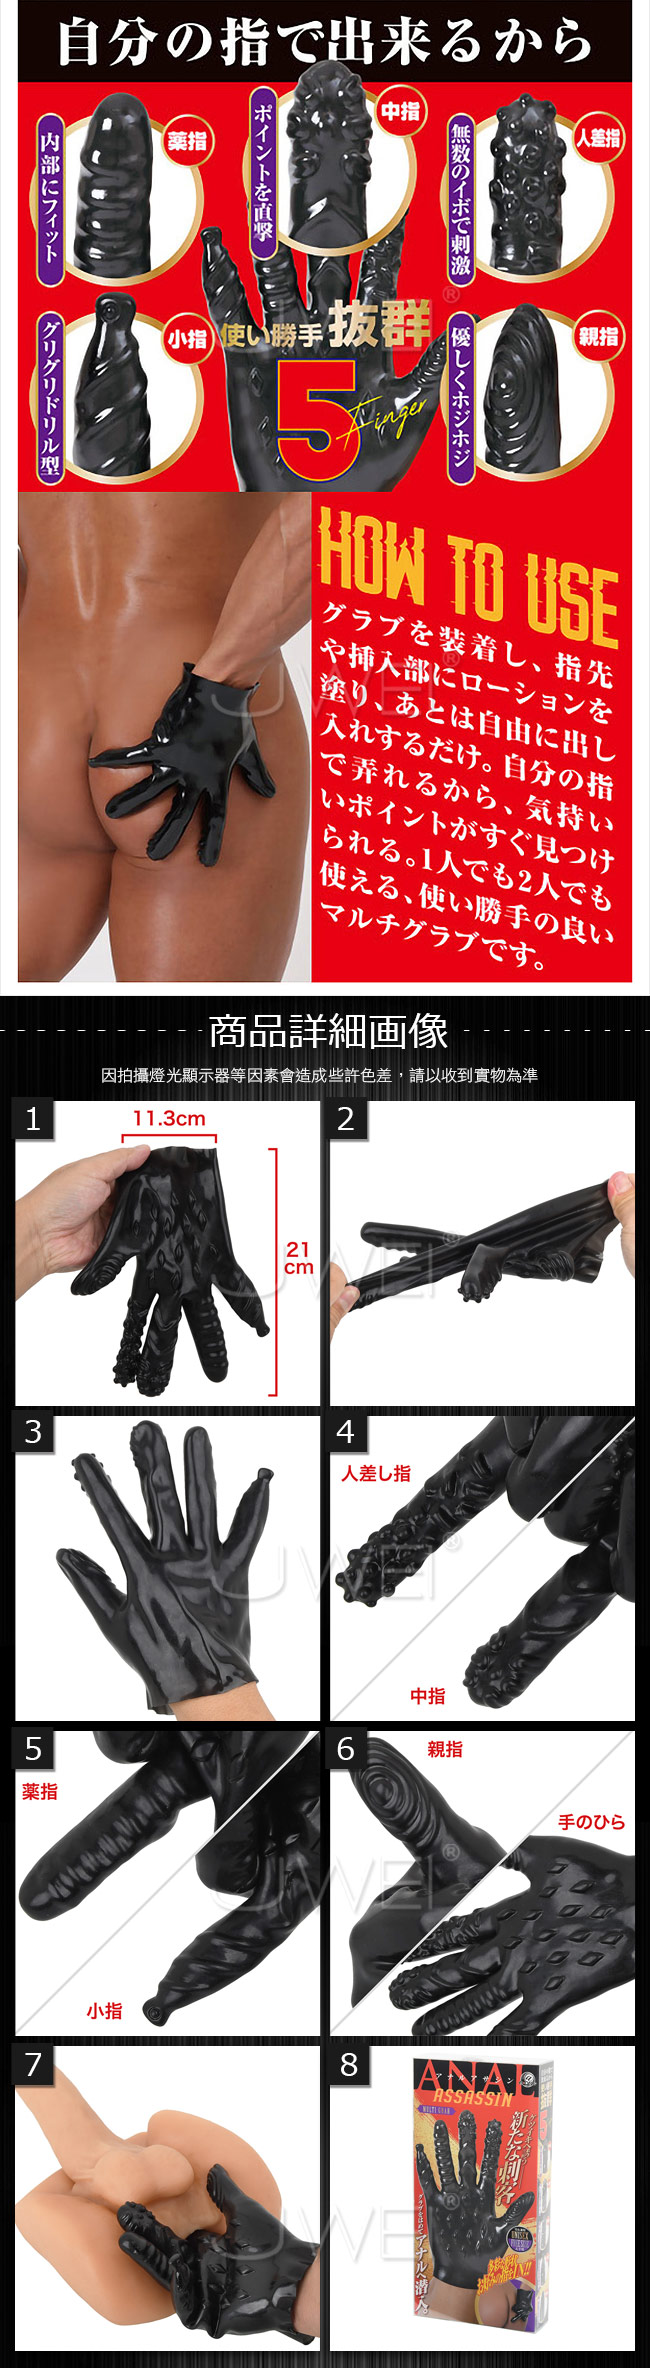 日本原裝進口A-ONE．ANAL ASSASSIN 男女通用後庭刺激五指手套